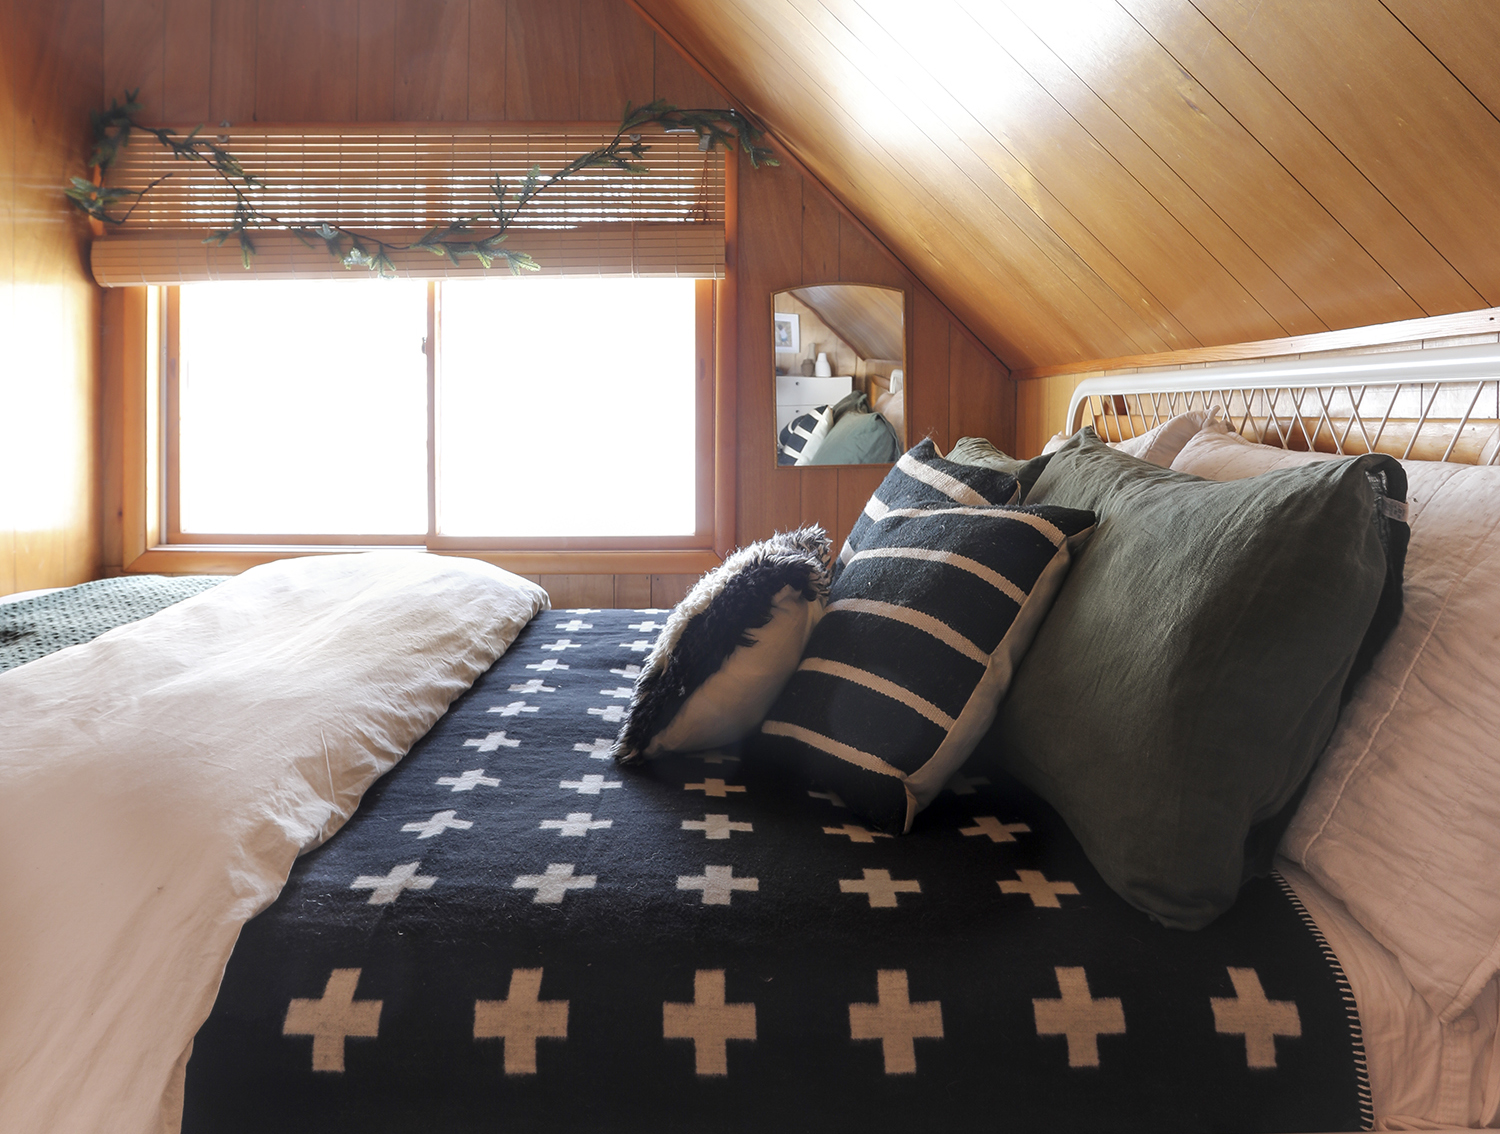 Wood Paneling in our Cabin Bedroom | Deuce Cities Henhouse